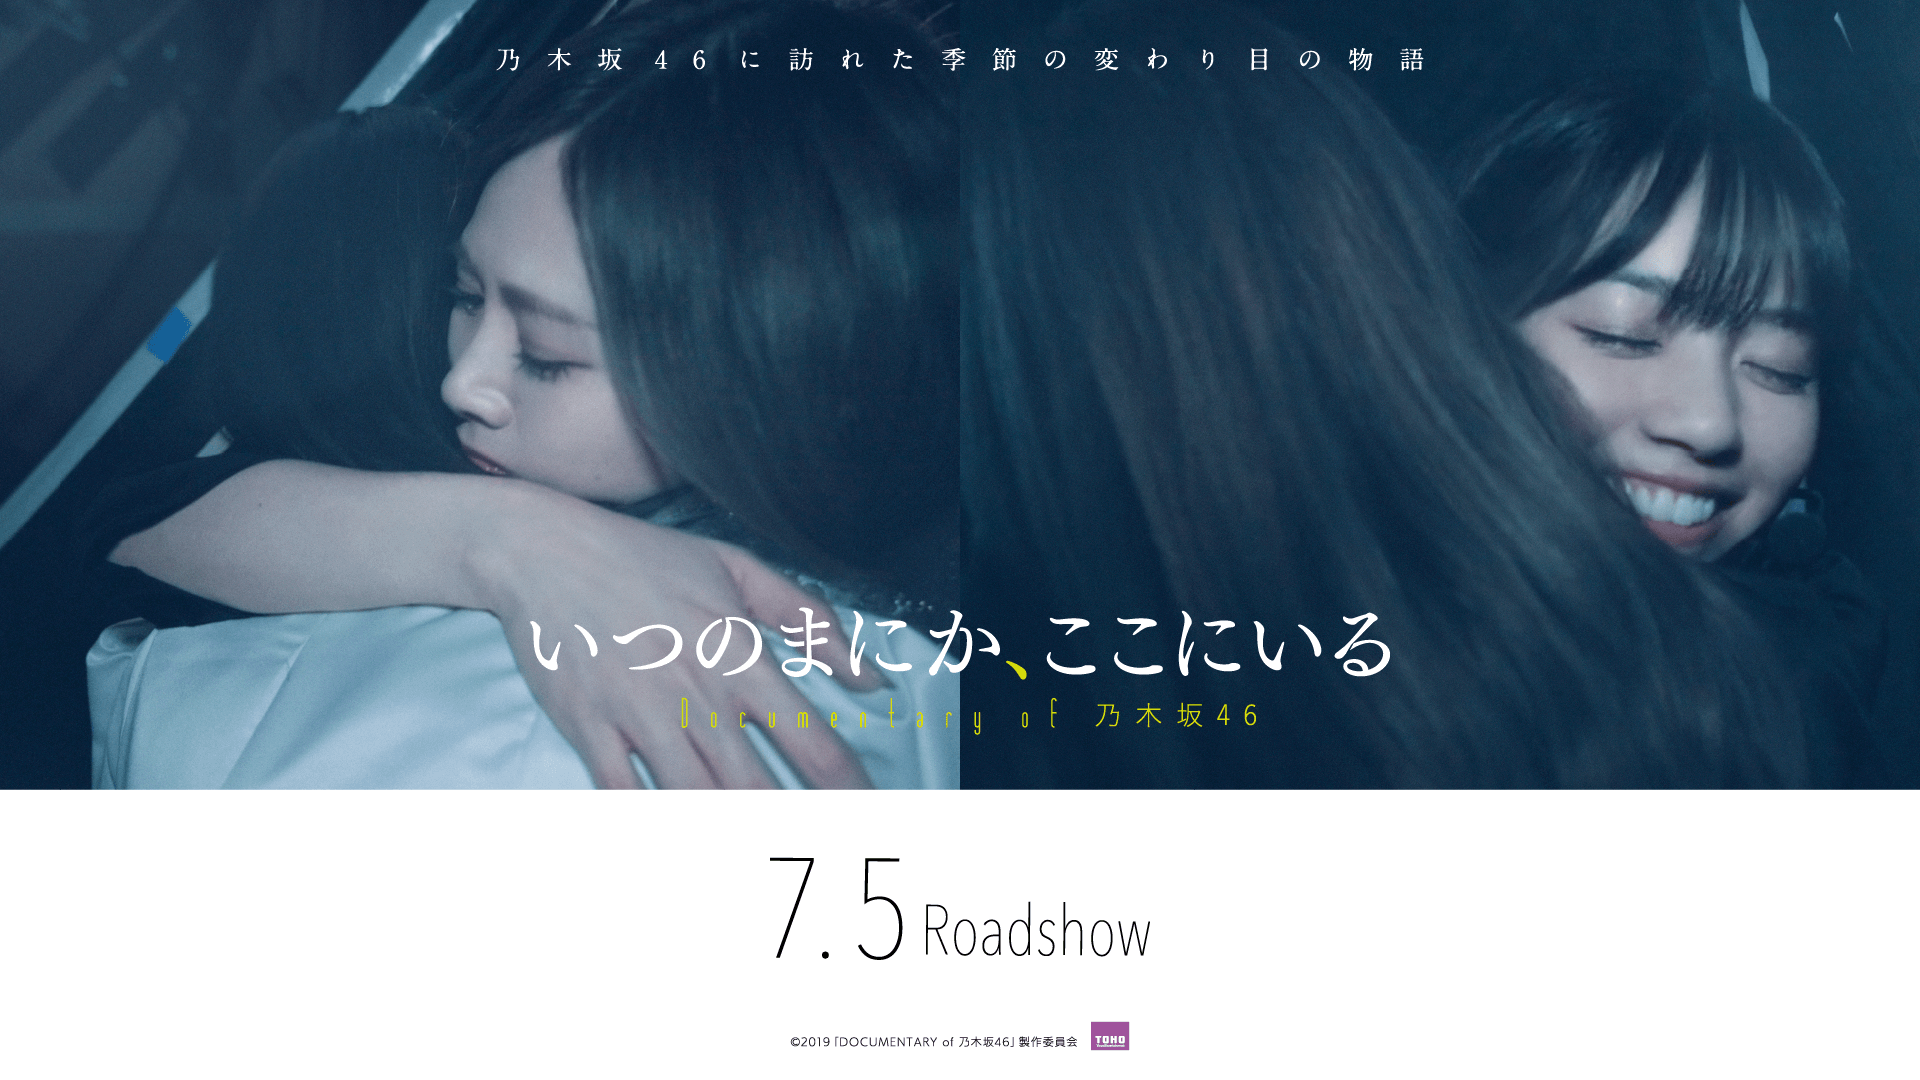 映画 いつのまにか ここにいる Documentary Of 乃木坂46 公式サイト